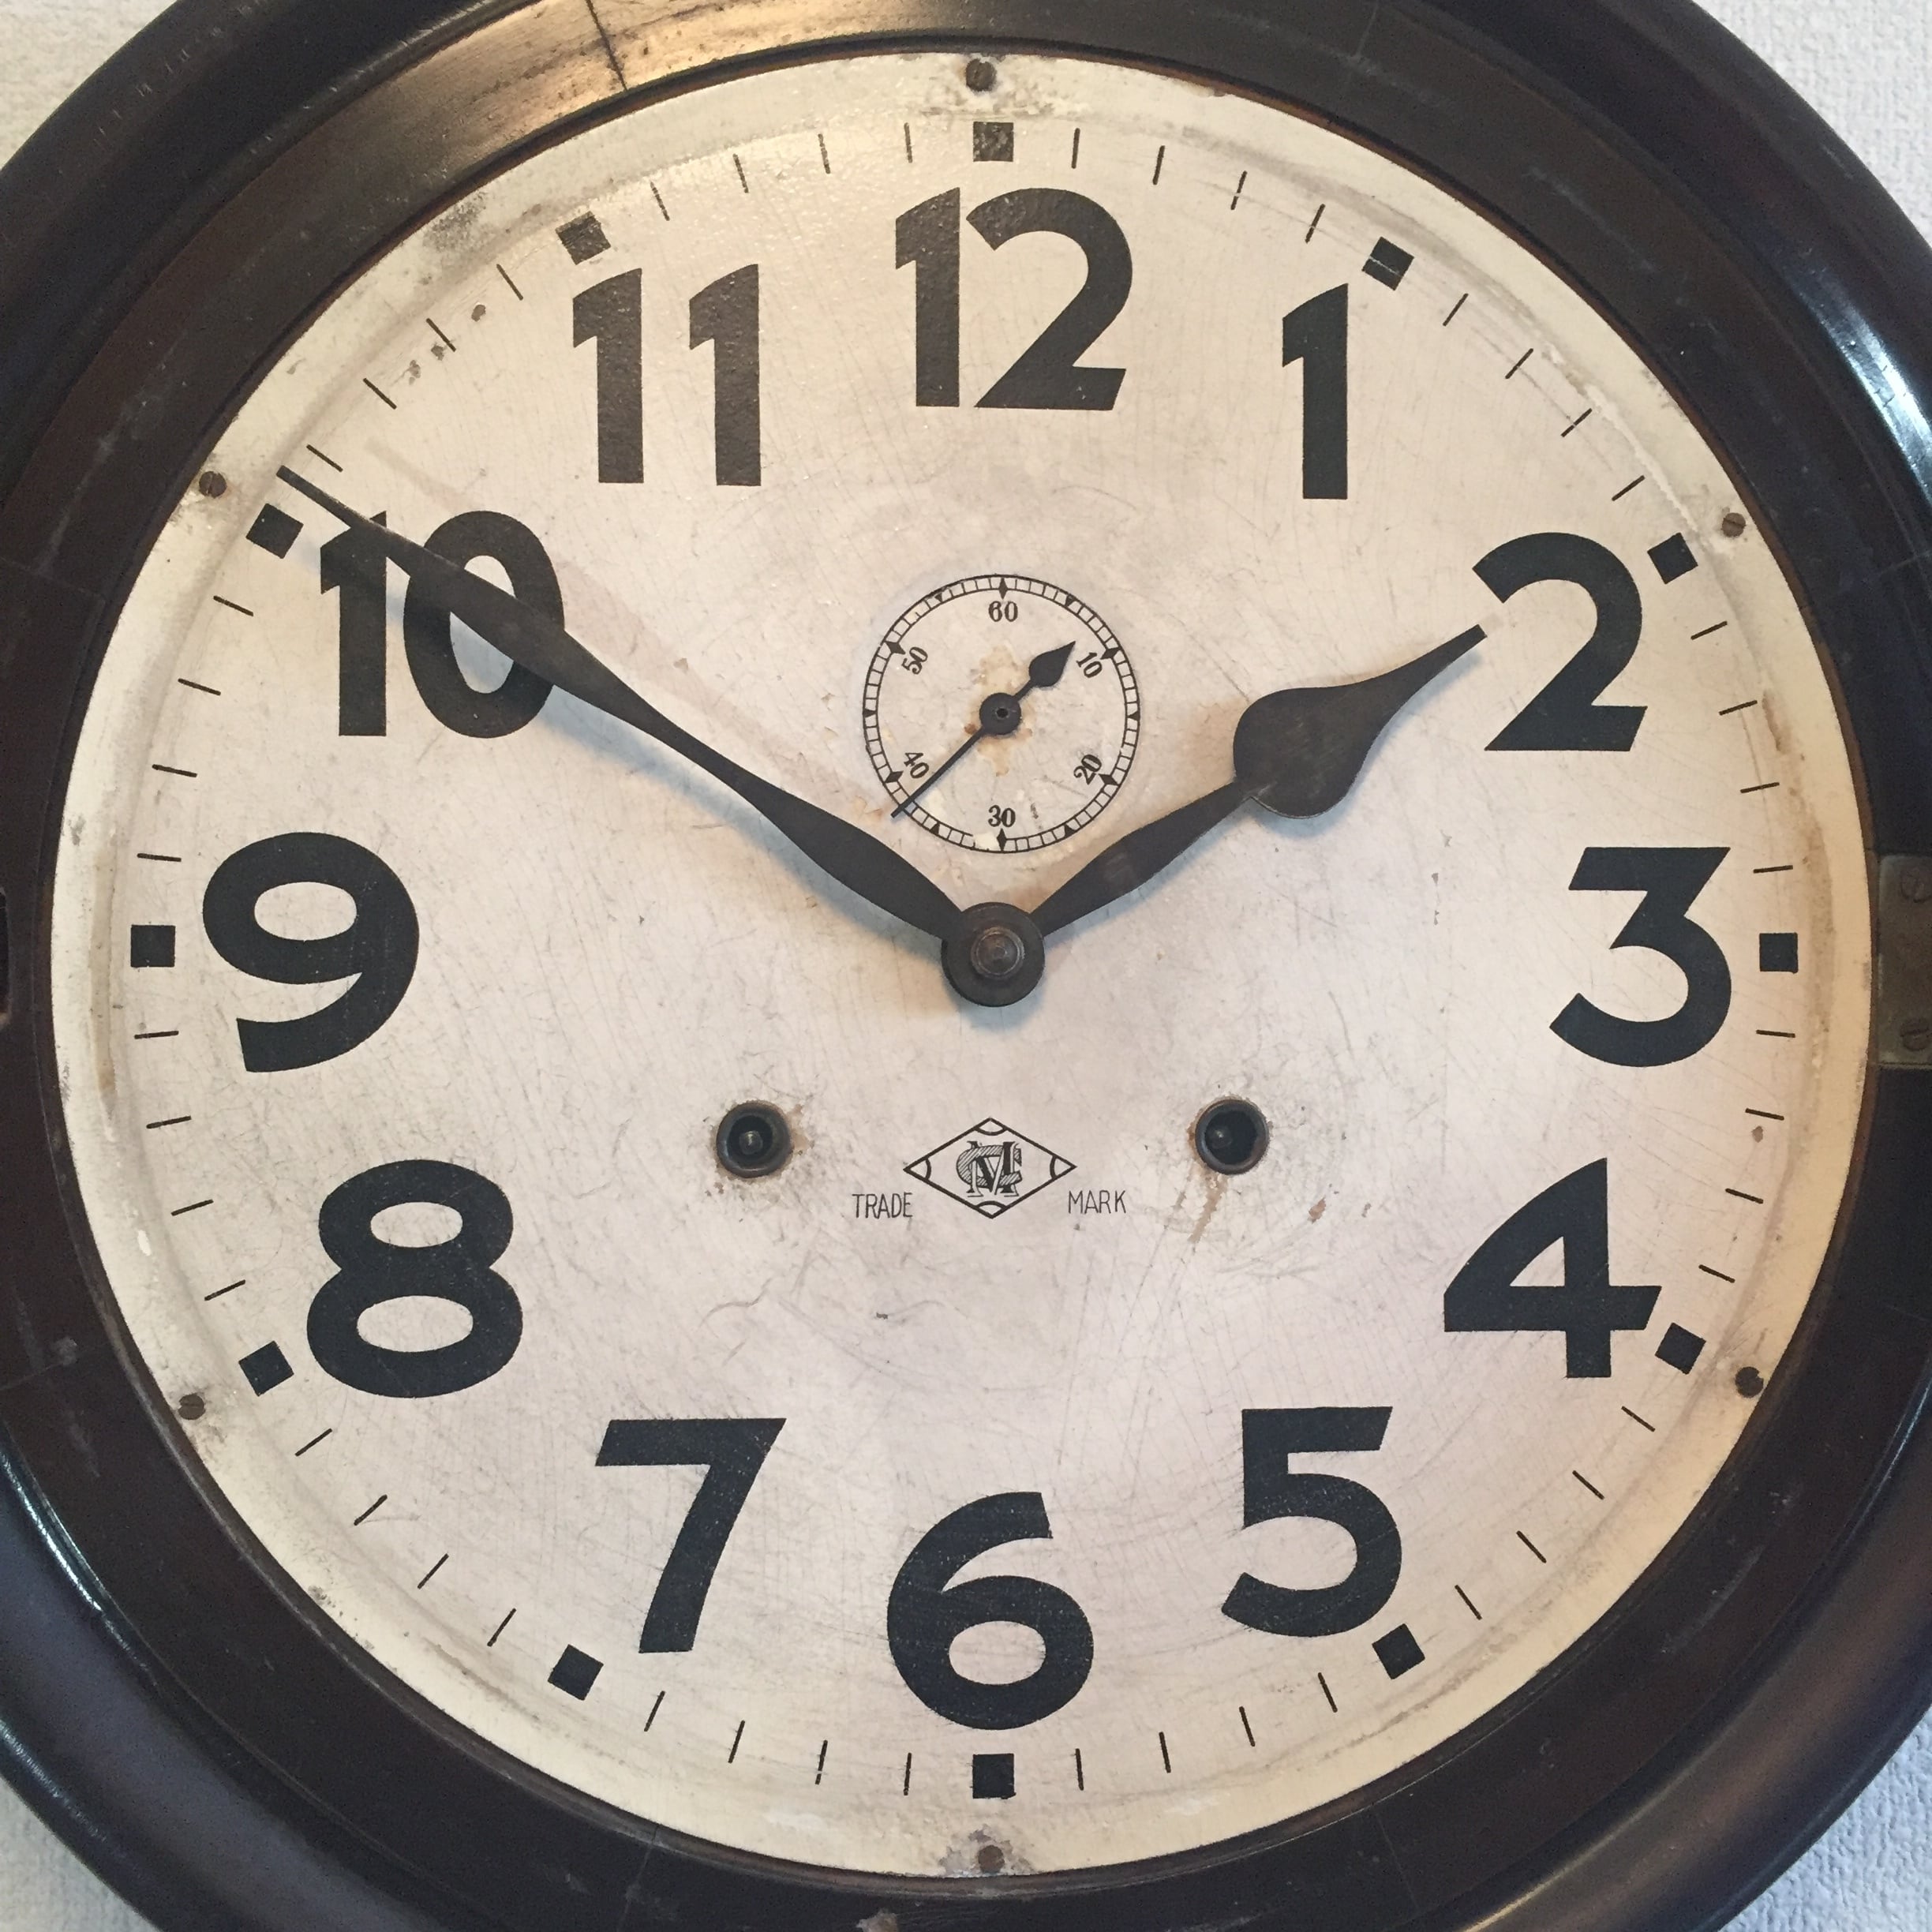 昭和初期頃 明治時計製 グレシャム型丸時計 スモセコ付